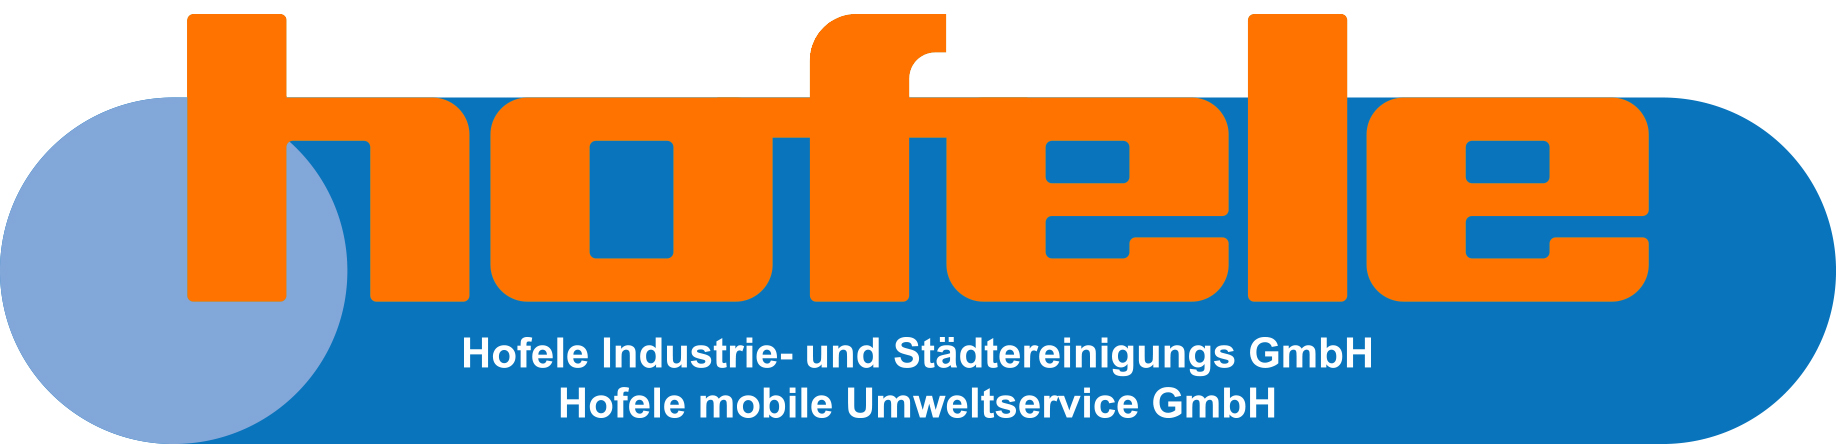 hofele Industrie + Städtereinigung GmbH